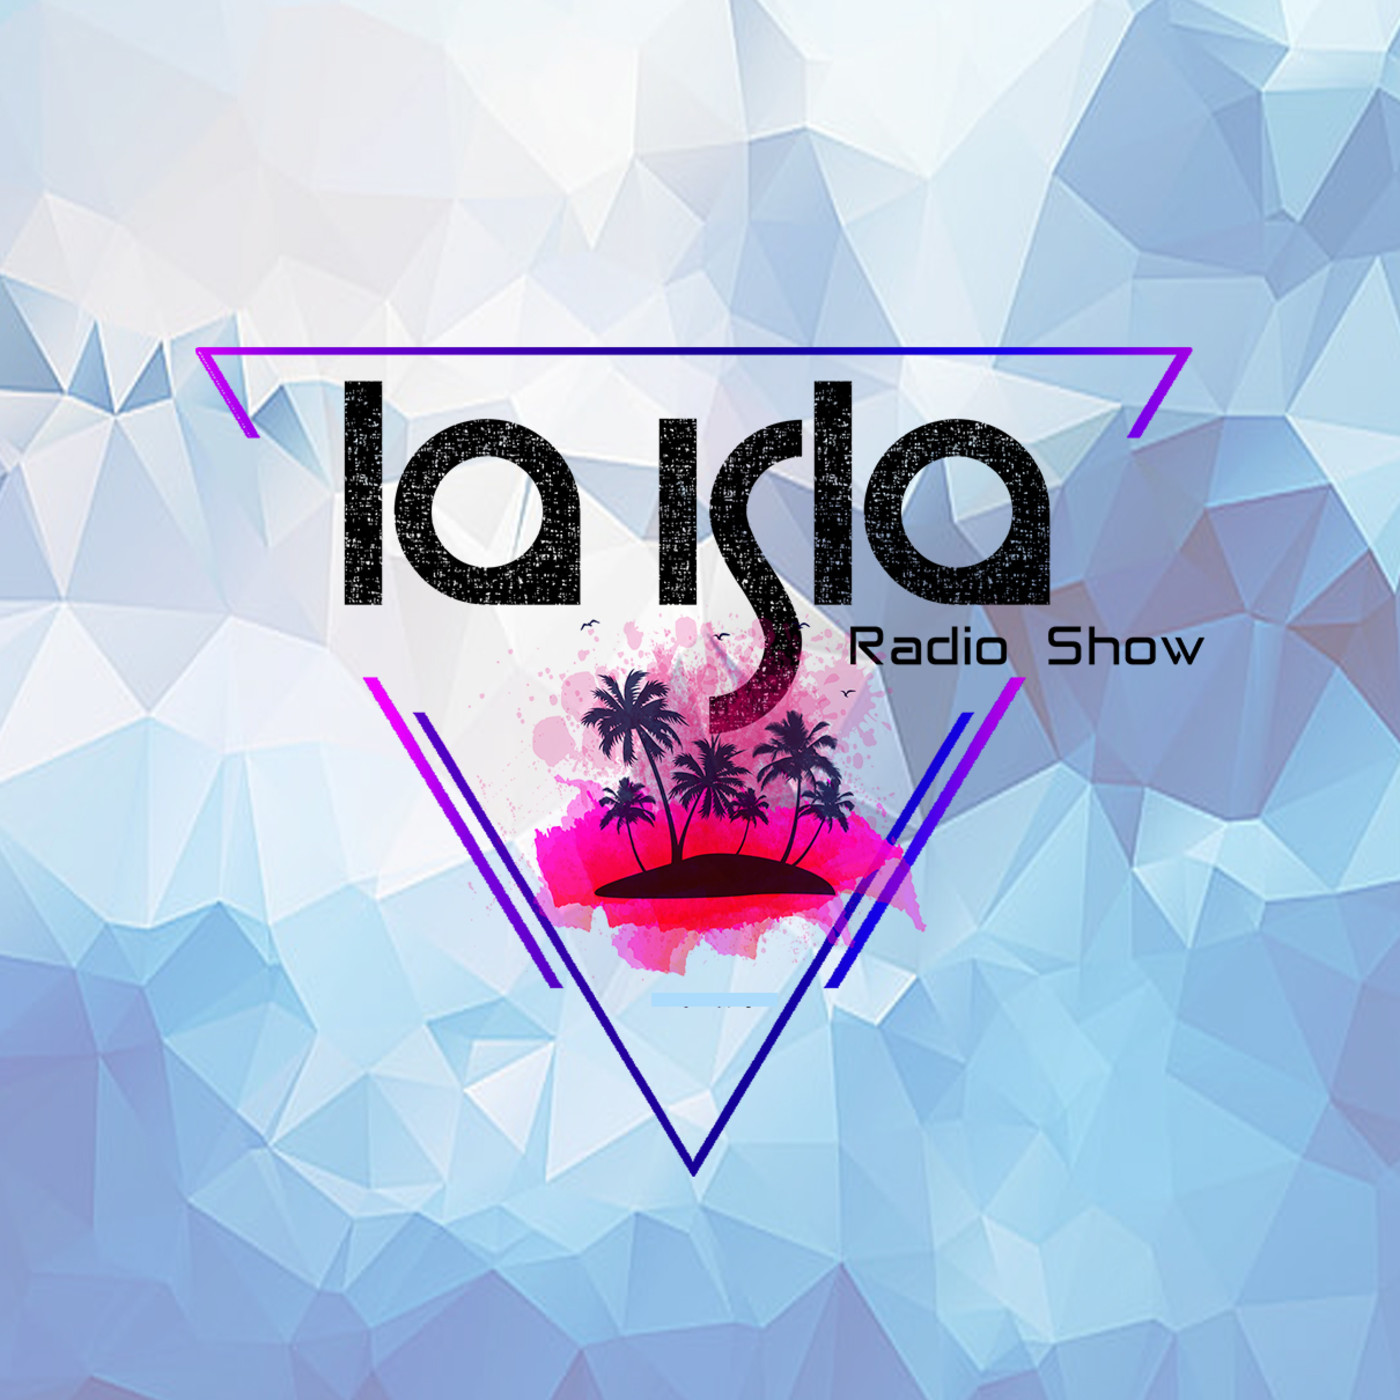 La Isla Radio Show #85 - 12/11/21 / SEGU